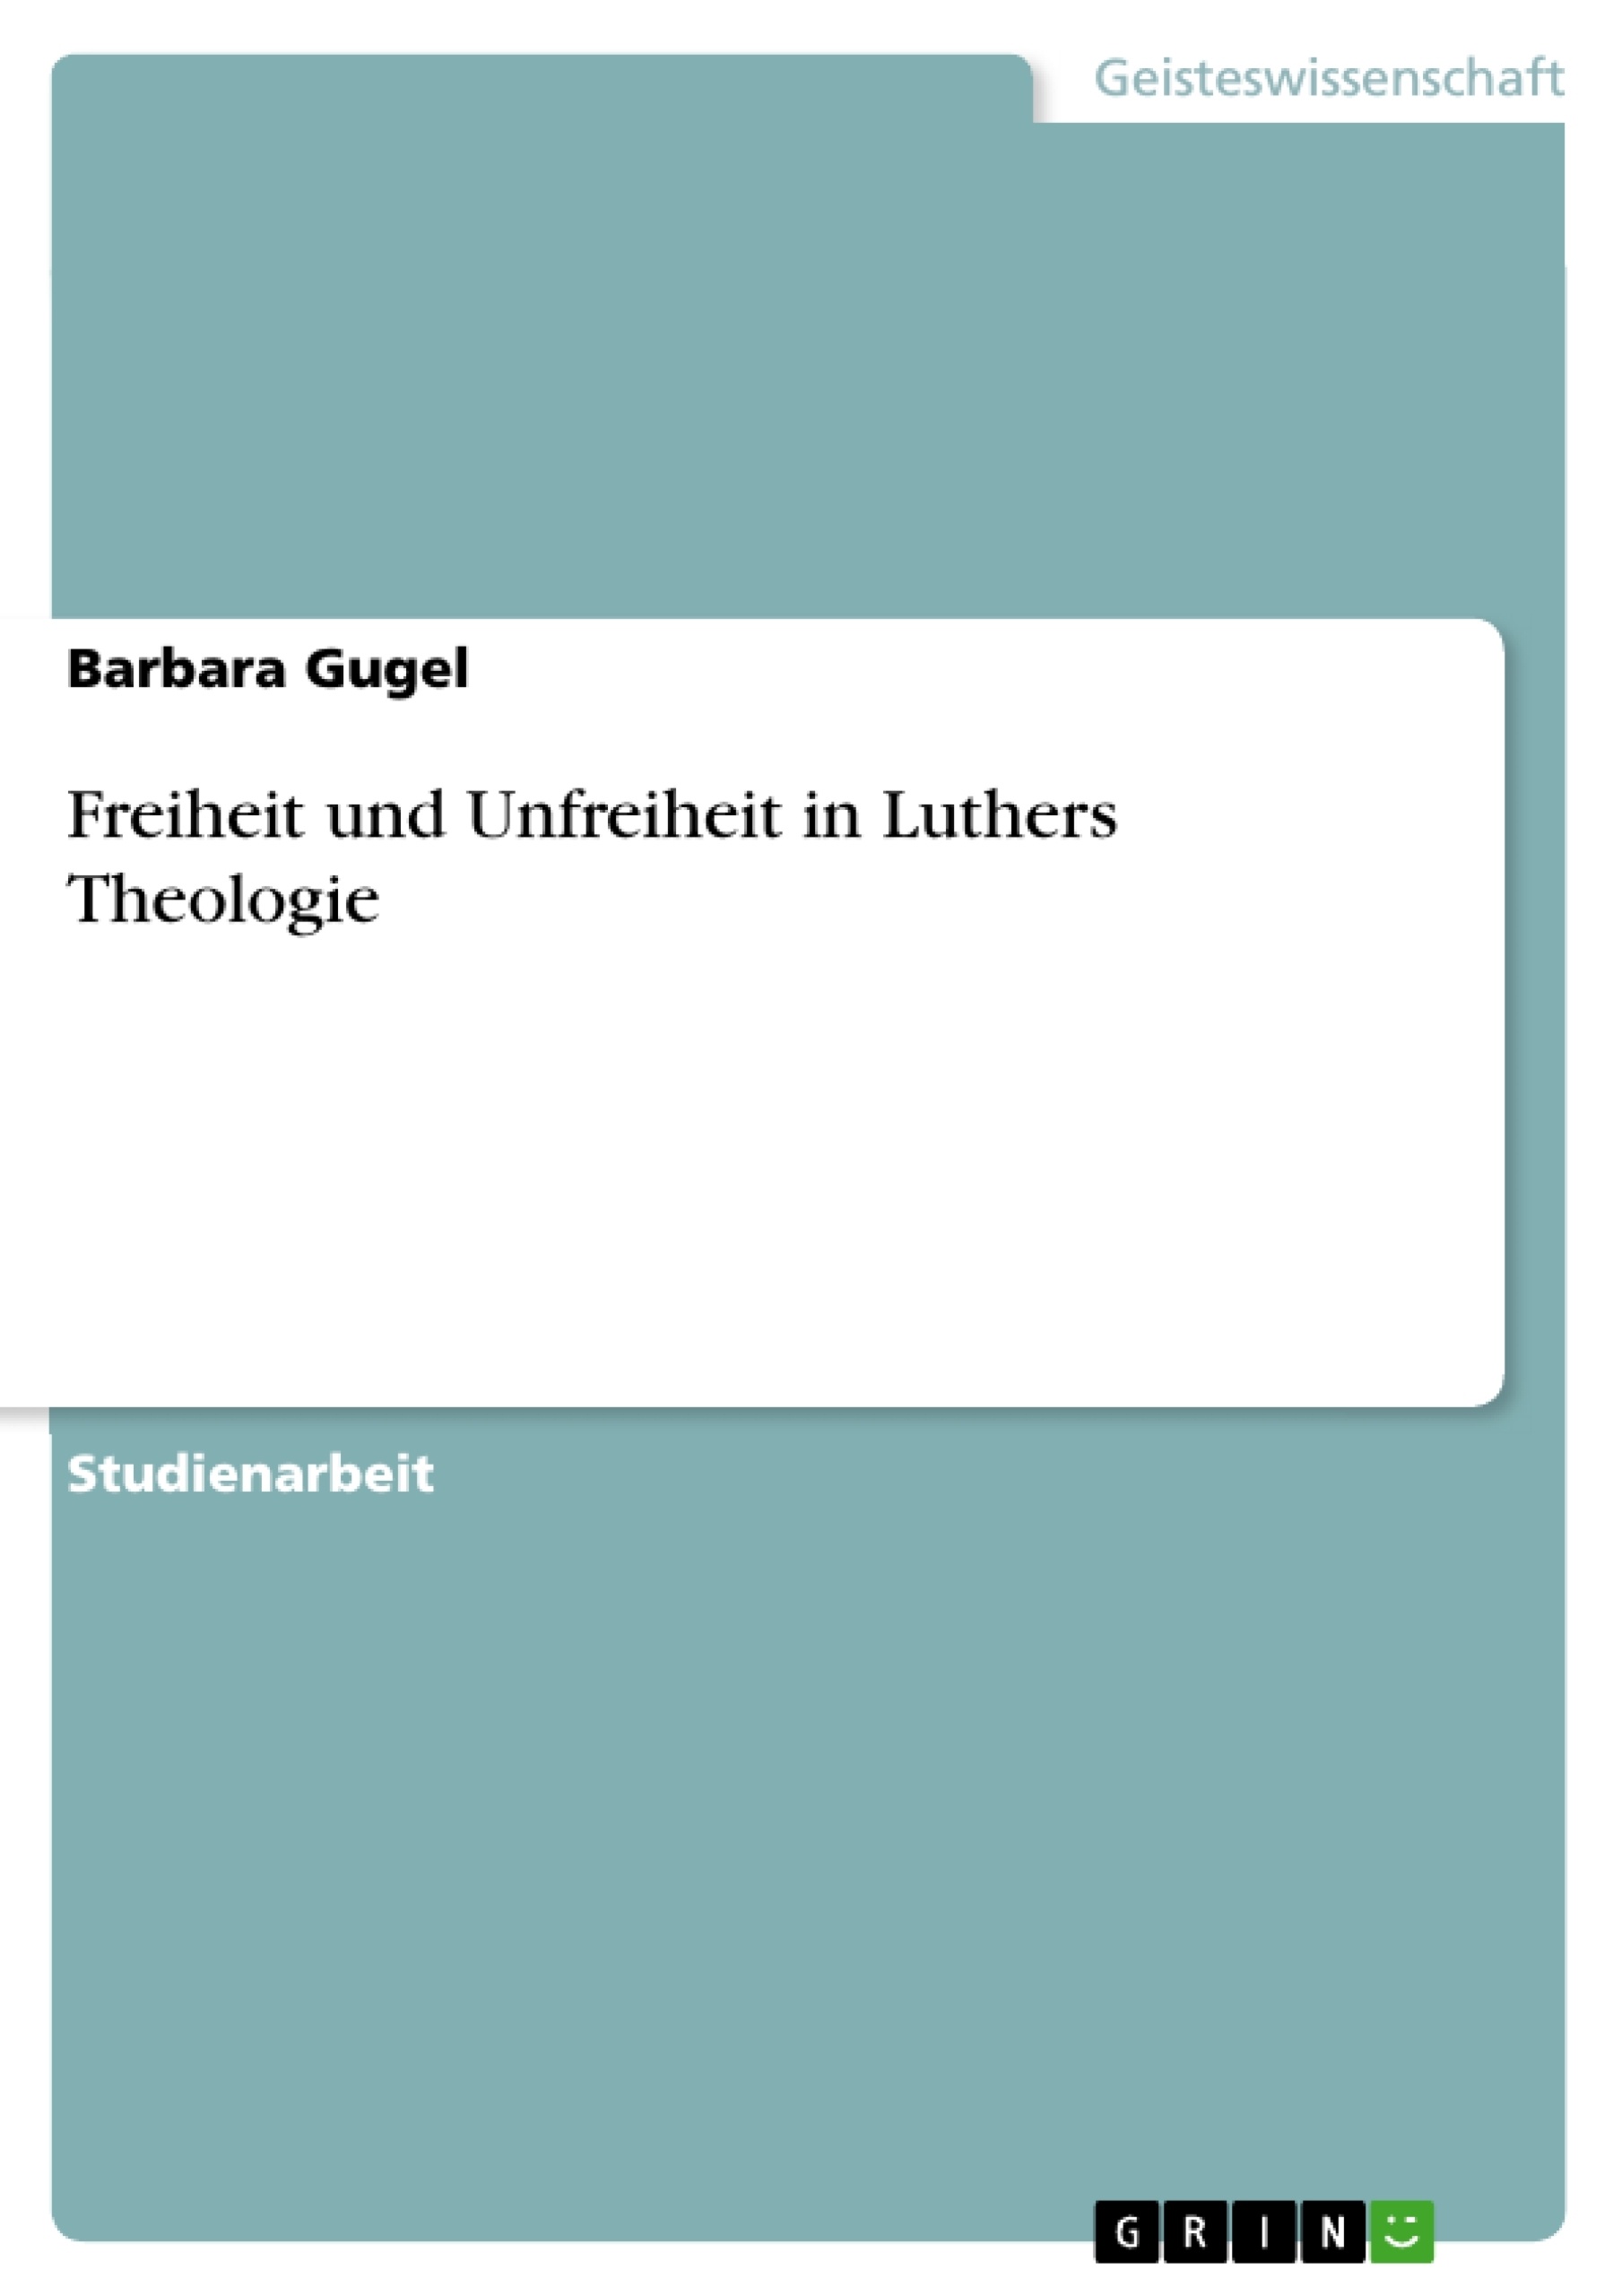 Título: Freiheit und Unfreiheit in Luthers Theologie